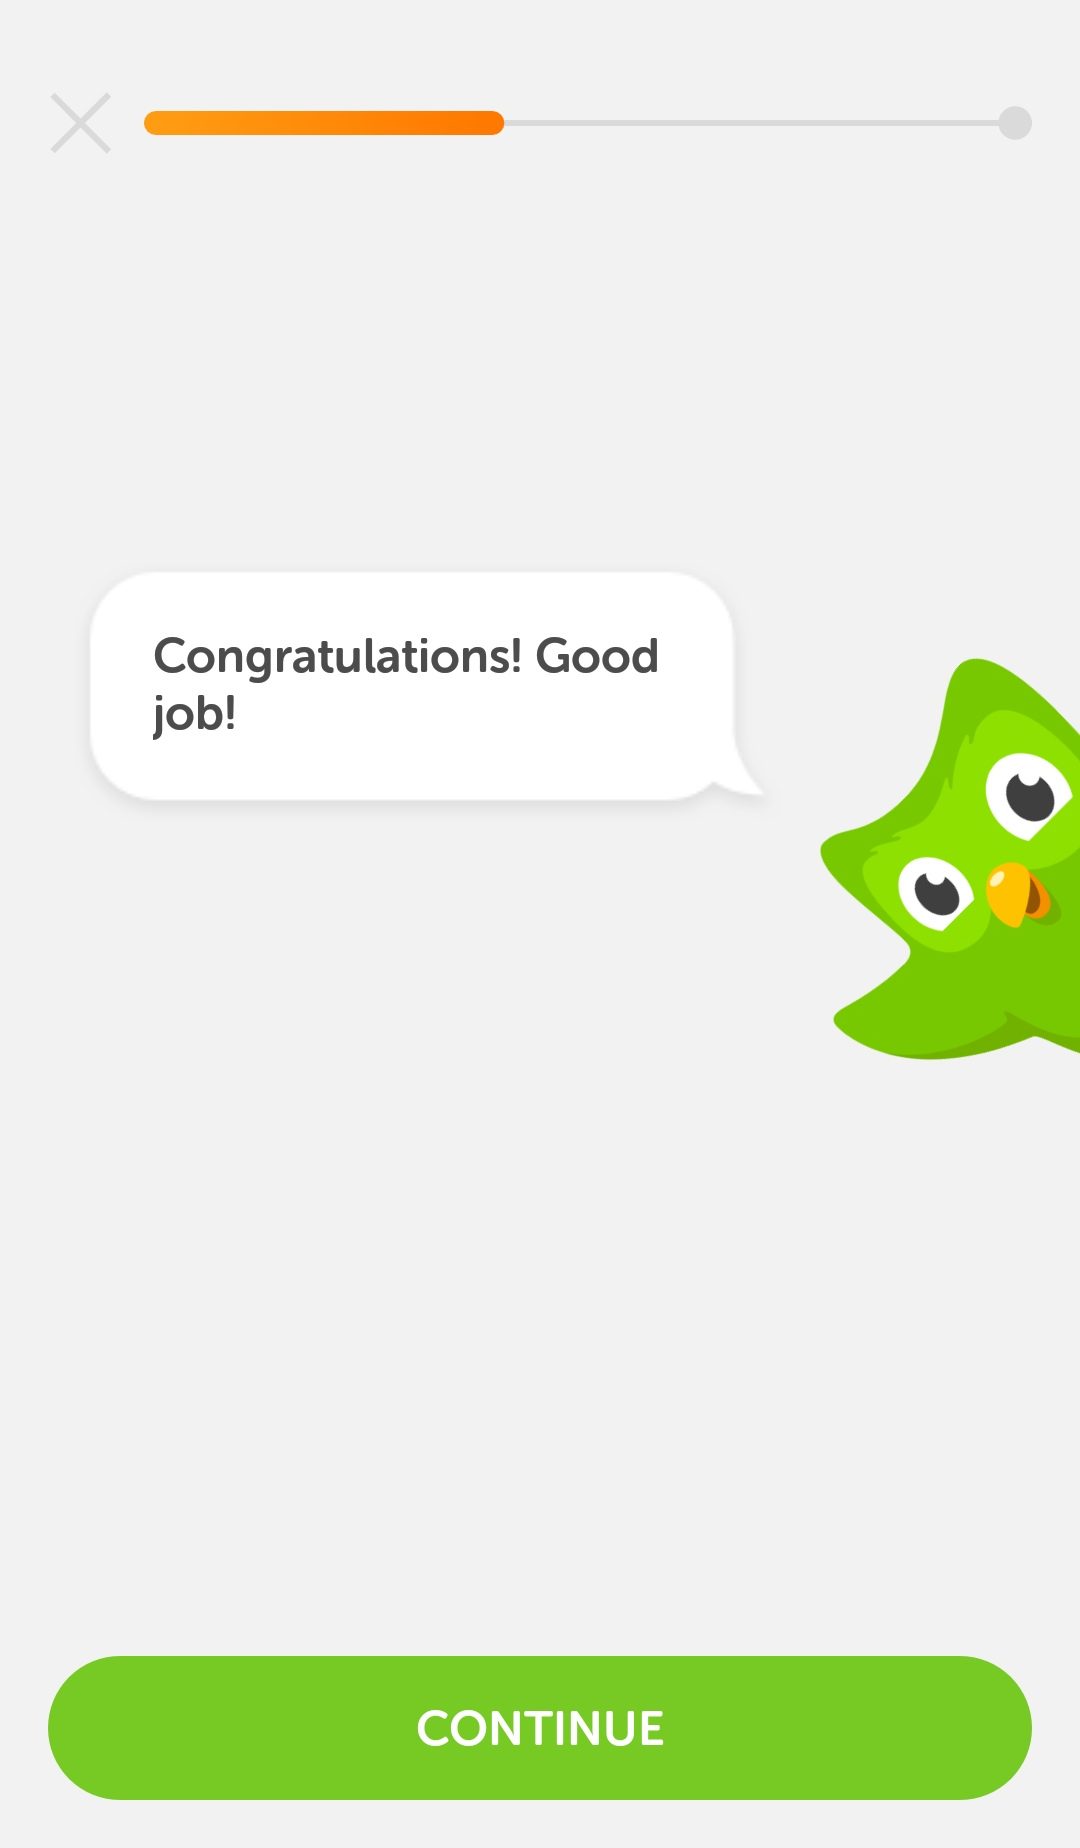 スキマ時間を有効に使えるイタリア語学習アプリ Duolingo かえるのオススメ